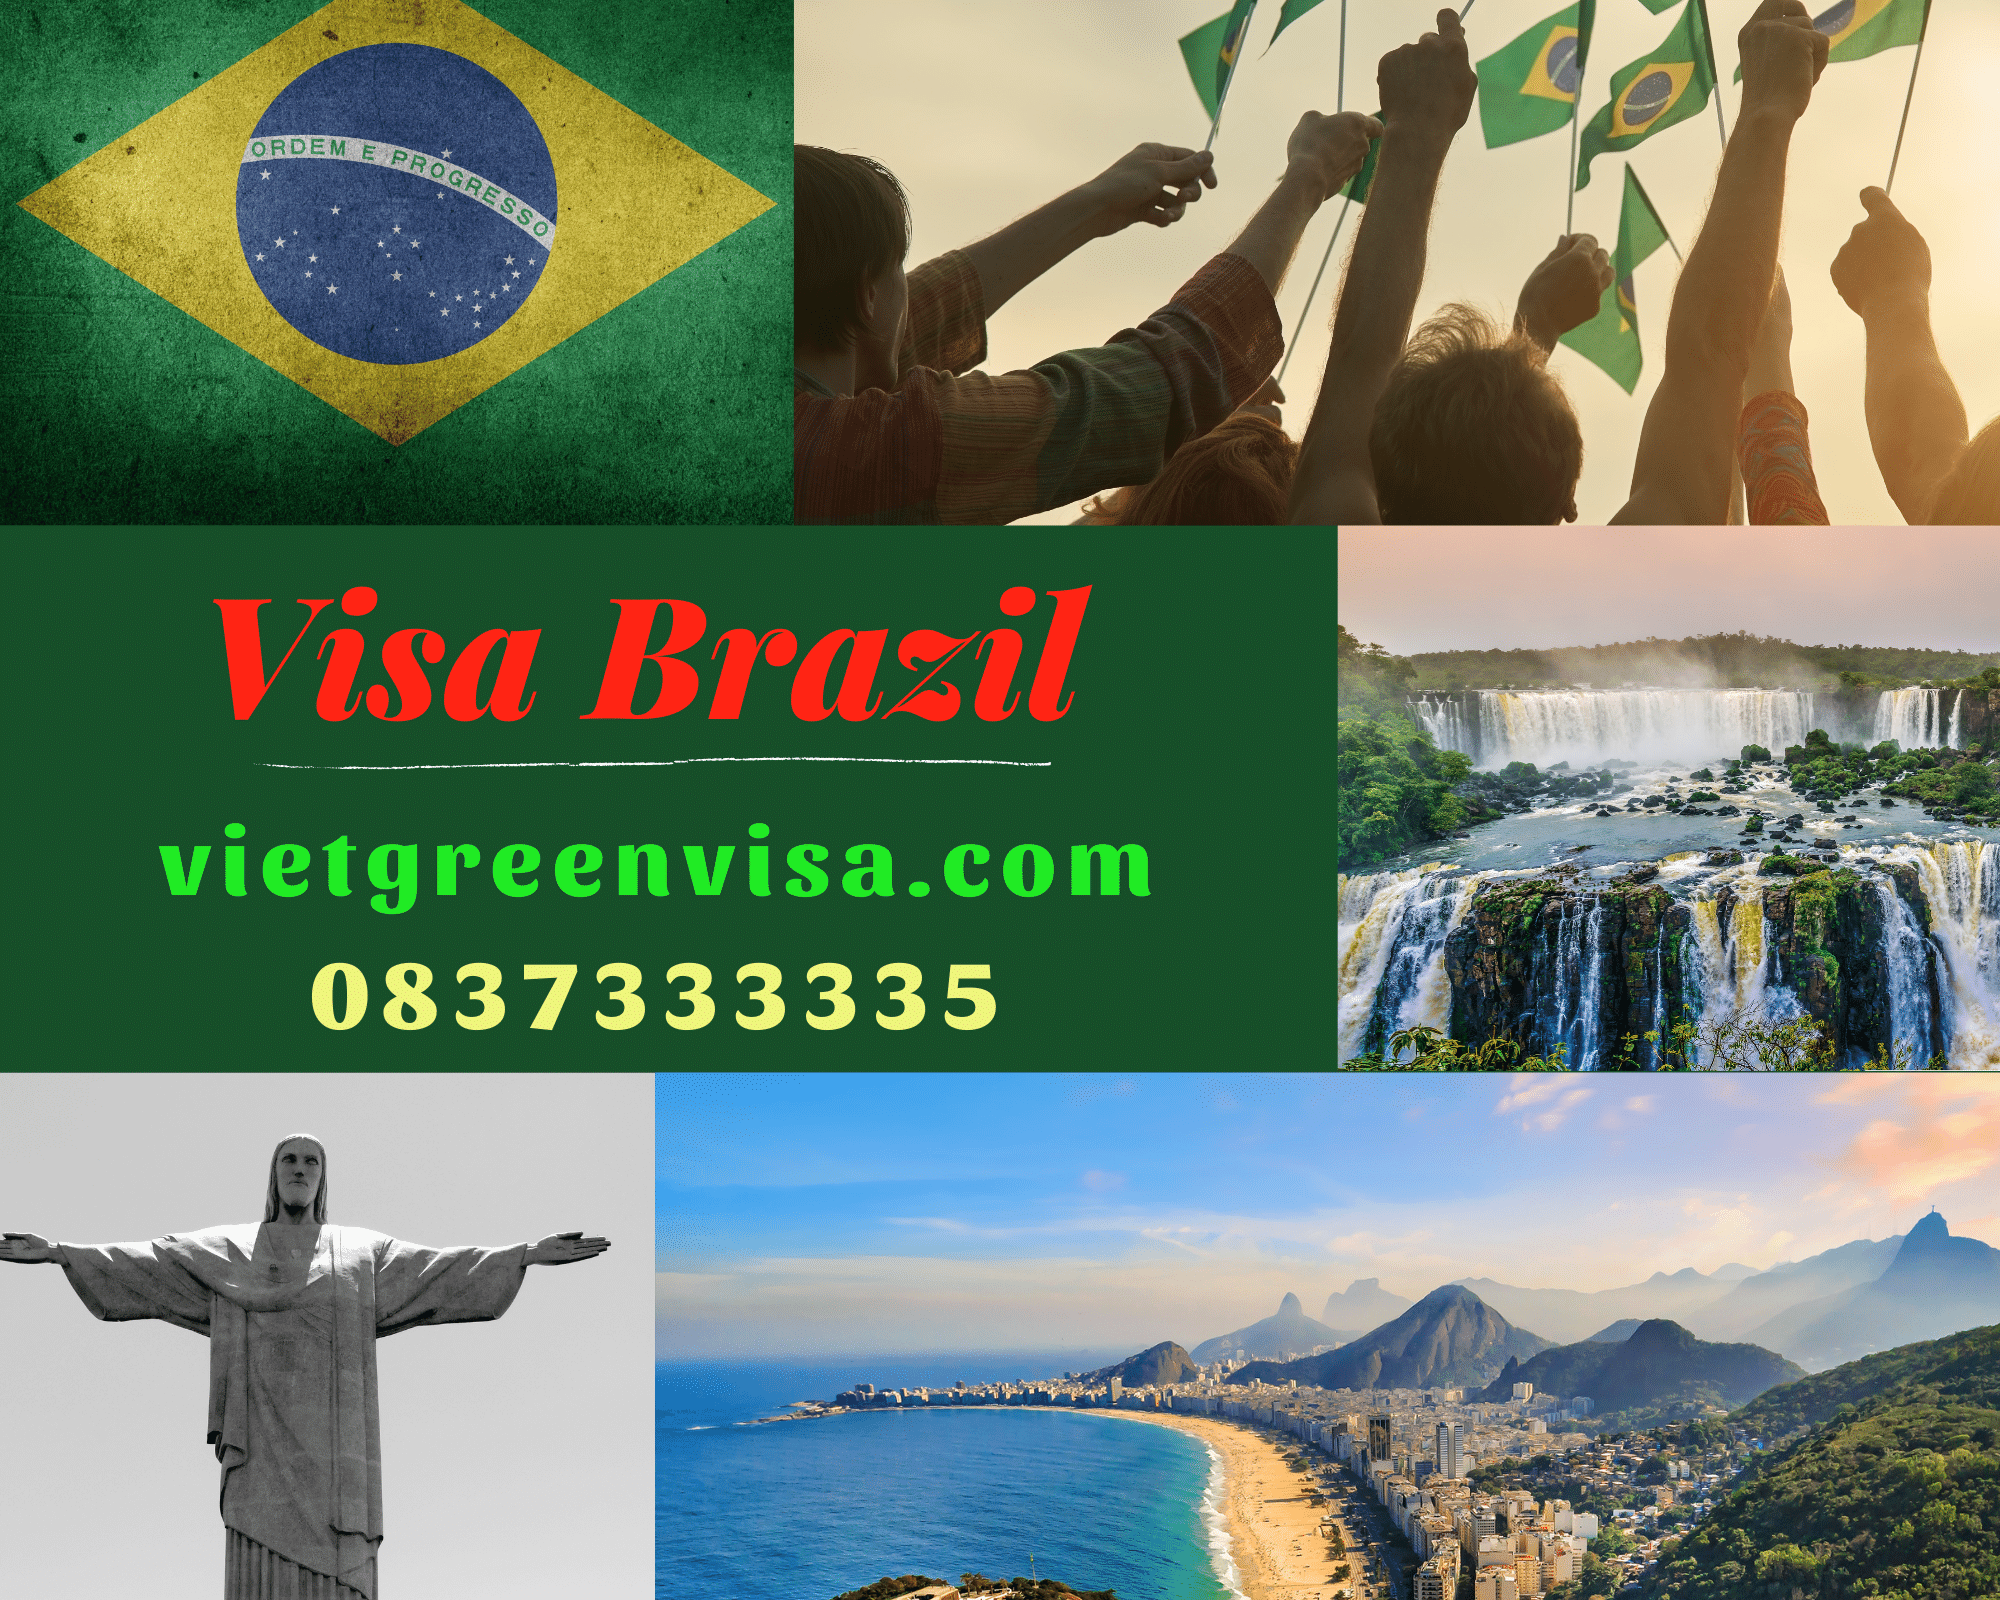 Mẹo nhỏ giúp bạn xin visa Brazil cực kỳ dễ dàng